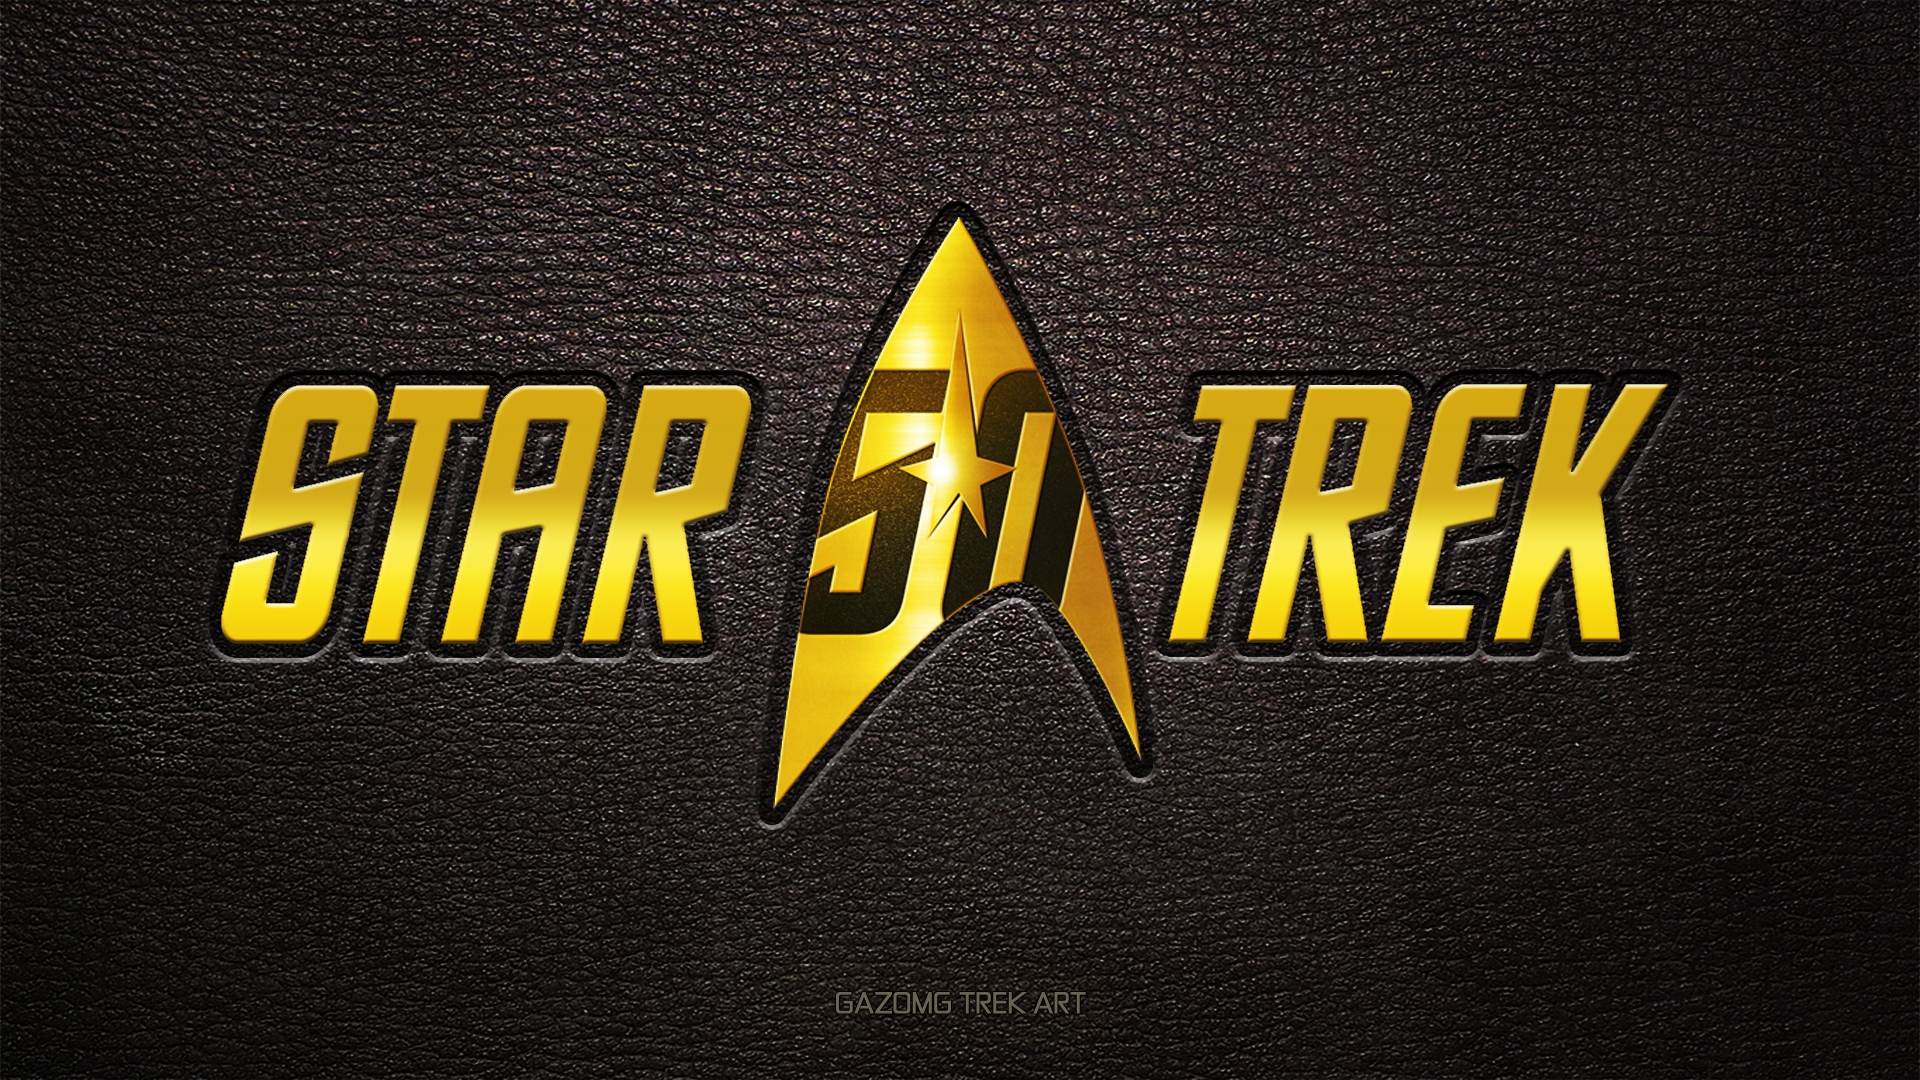 Star Trek 50th Logo Wallpaper by gazomg on DeviantArt